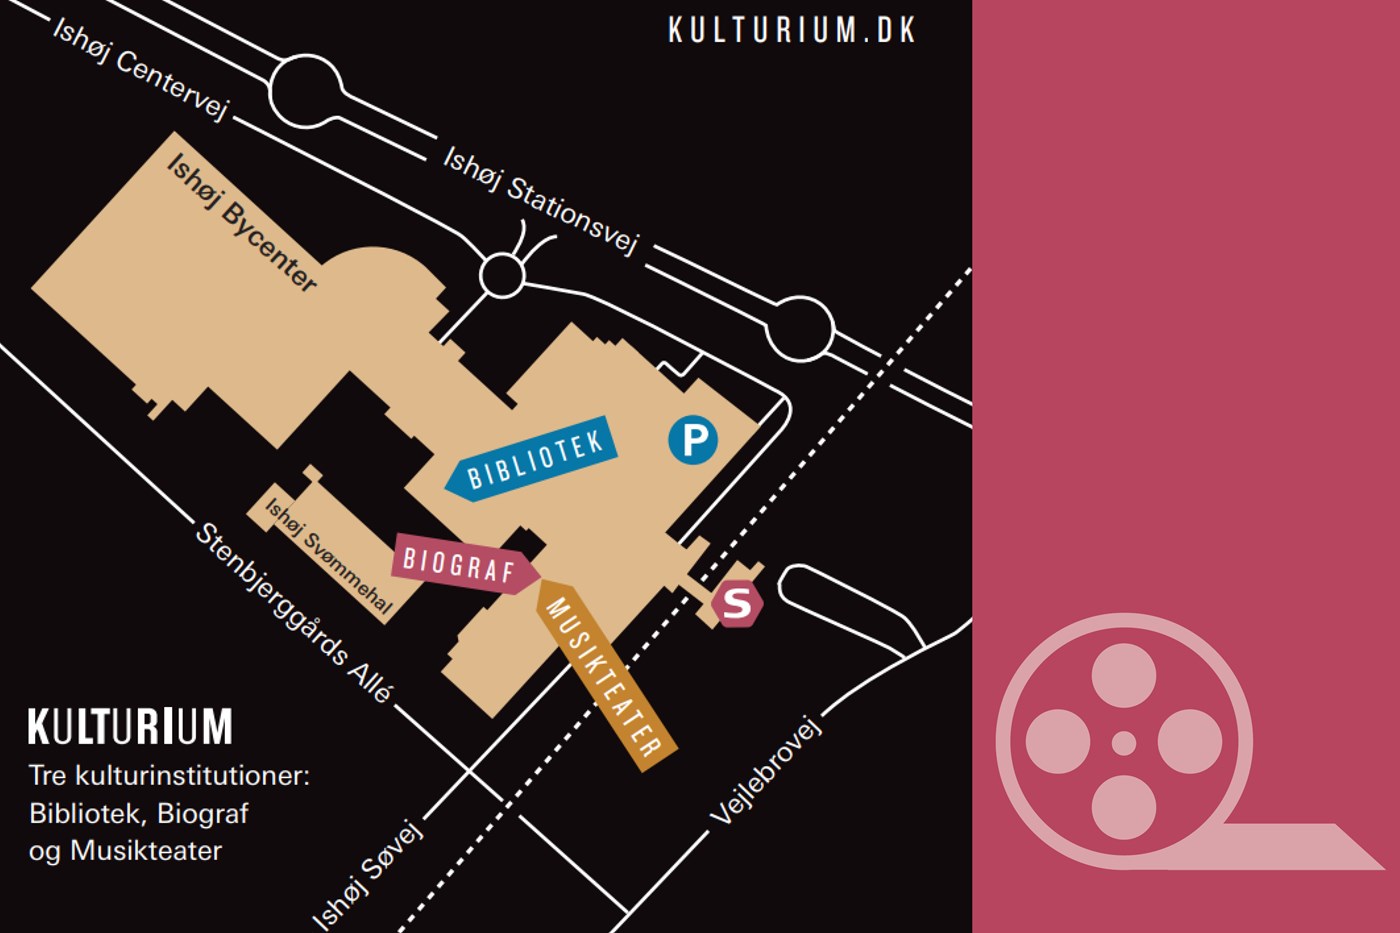 Kulturium består af tre kulturinstitutioner: Bibliotek, biograf og musikteater.